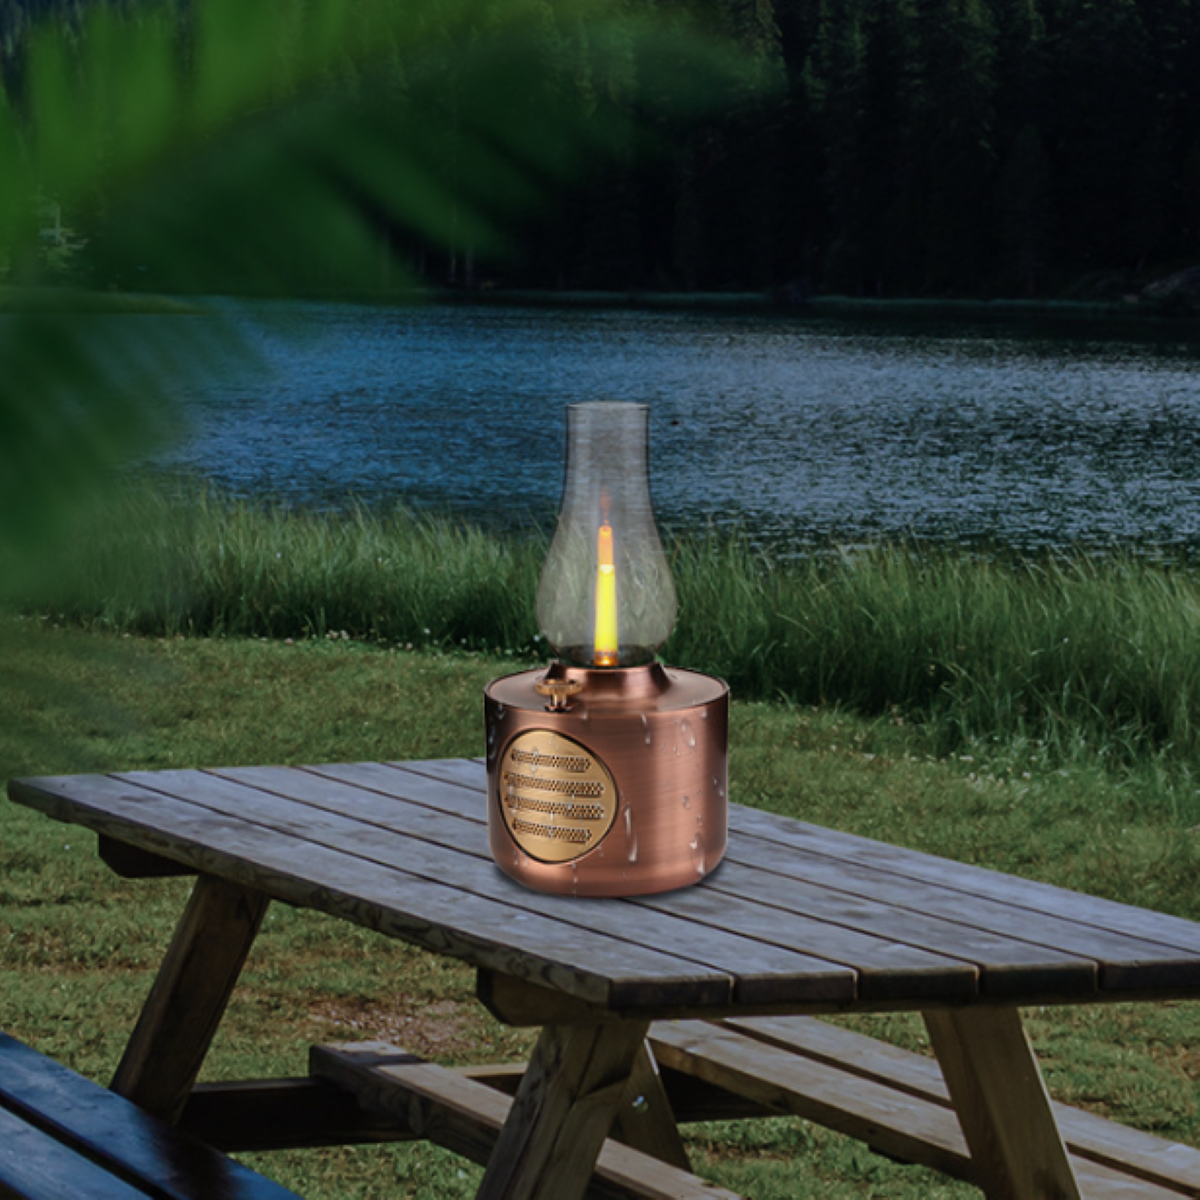 ENBAOXIN Kerosin bluetooth Lautsprecher wasserdicht und Simuliertes Kerzenlicht, Bronze spritzwassergeschützt - Bluetooth-Lautsprecher